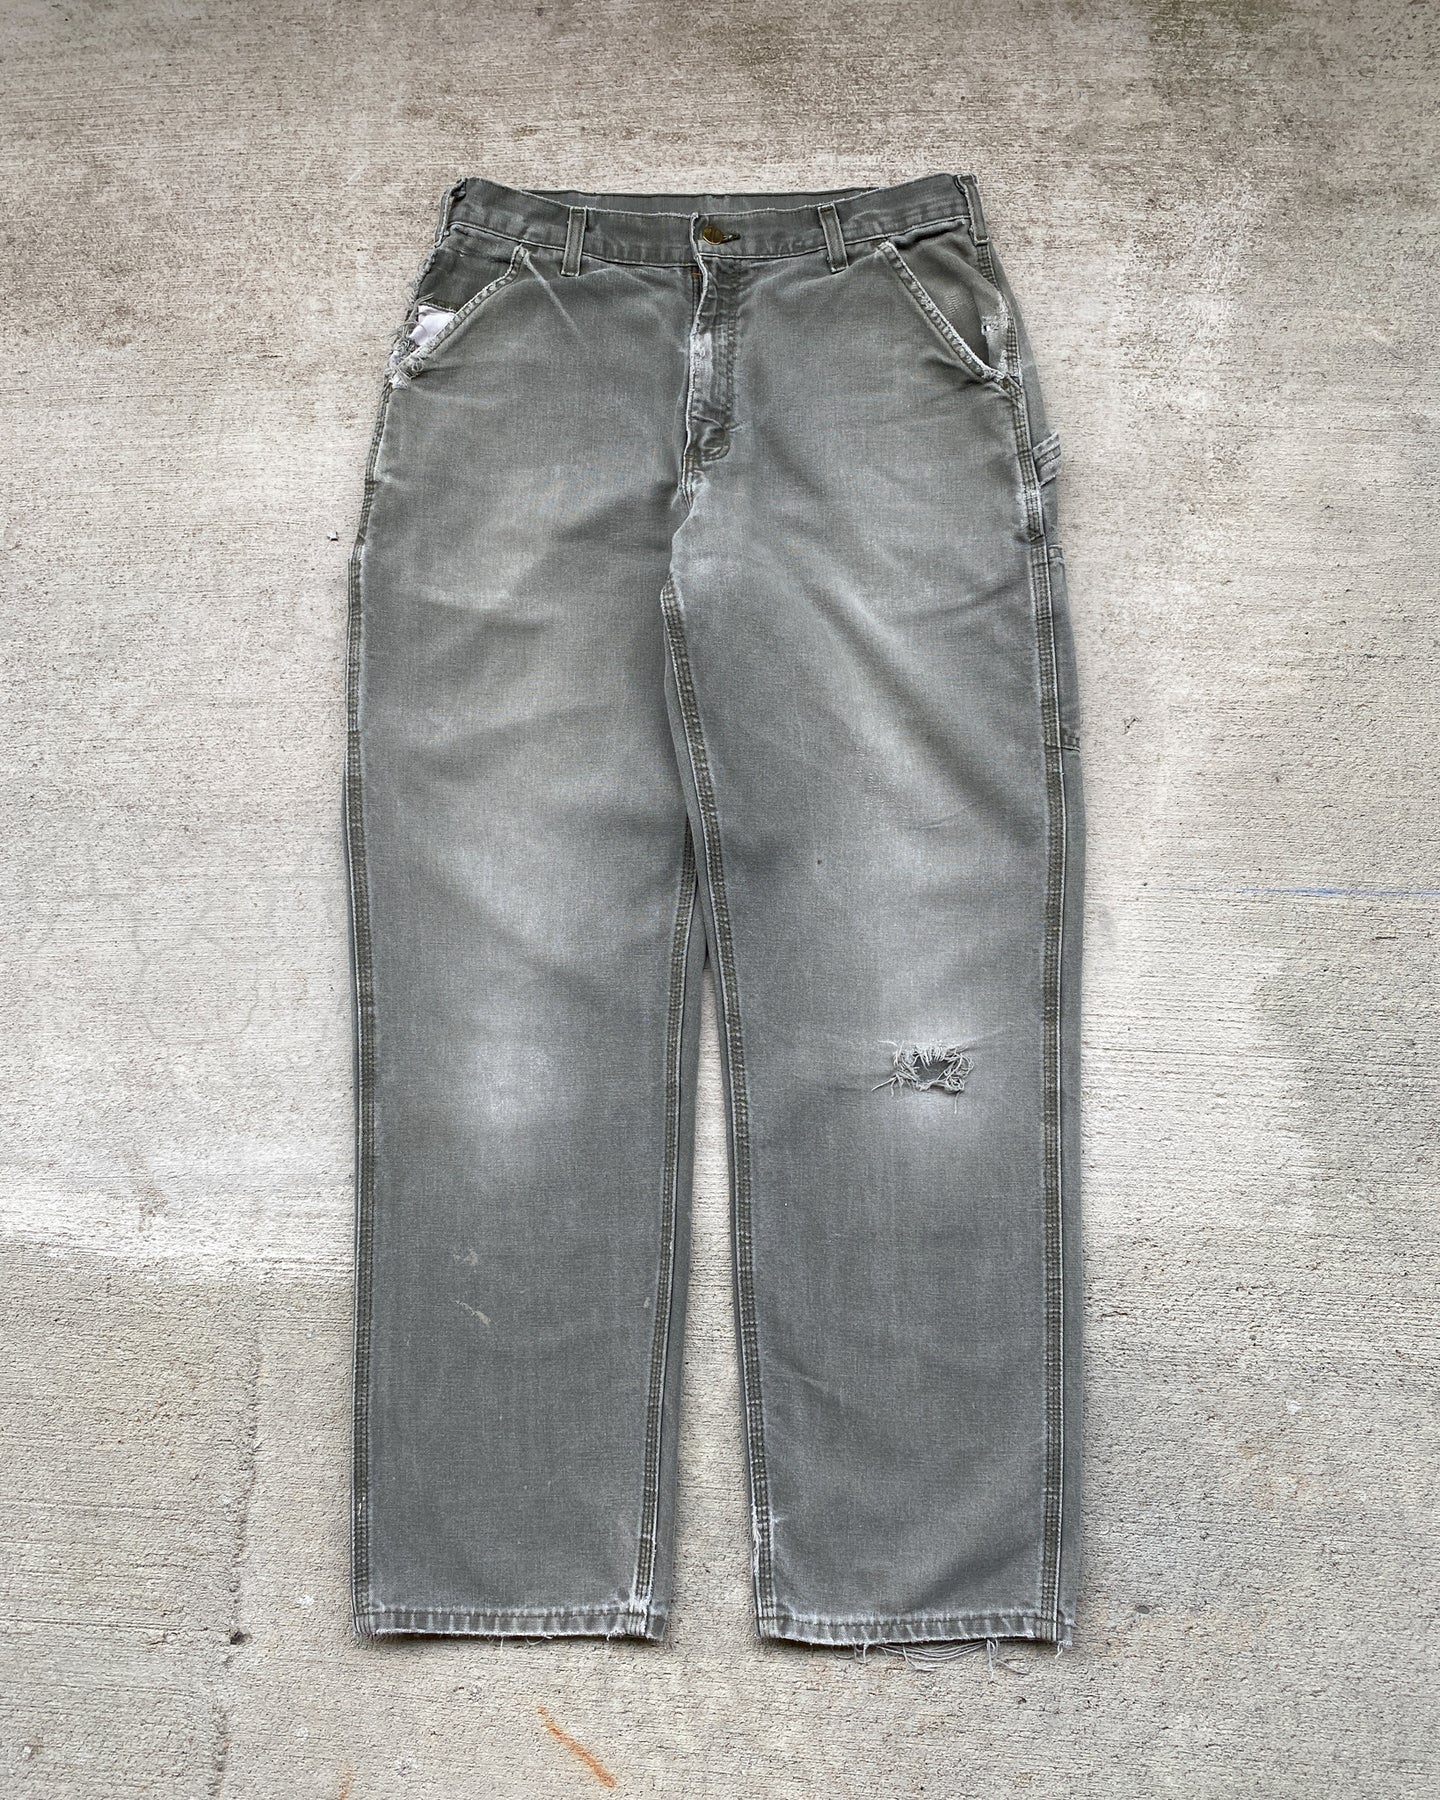 Carhartt Moss Green Carpenter Work Pants - Size 34 x 32